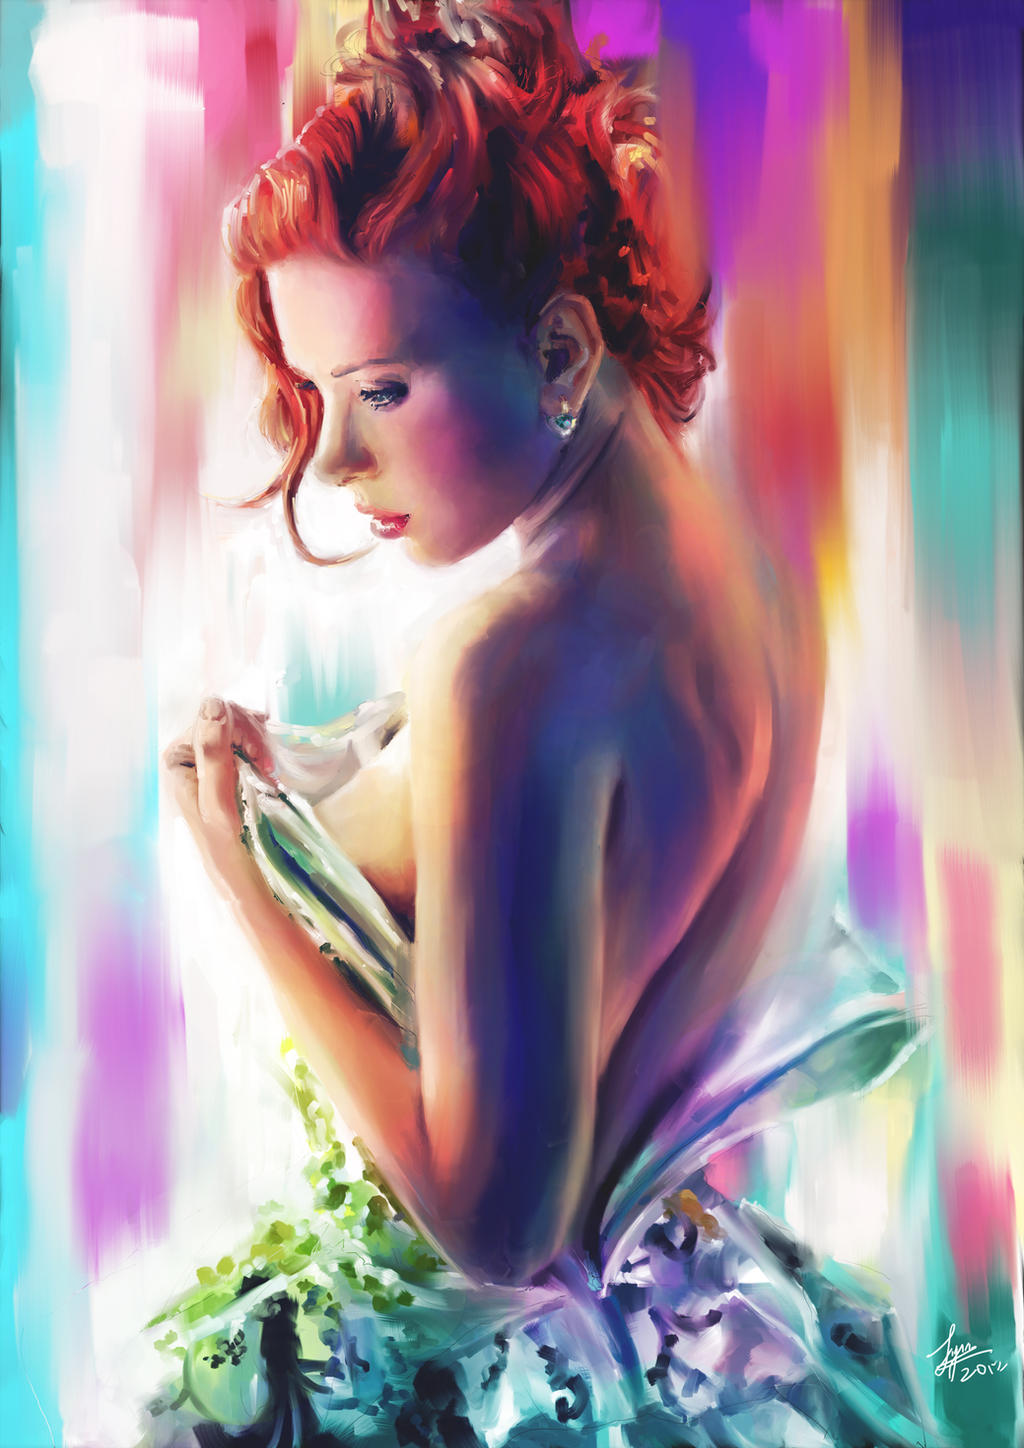 Scarlett Johansson By Zlynn On Deviantart 